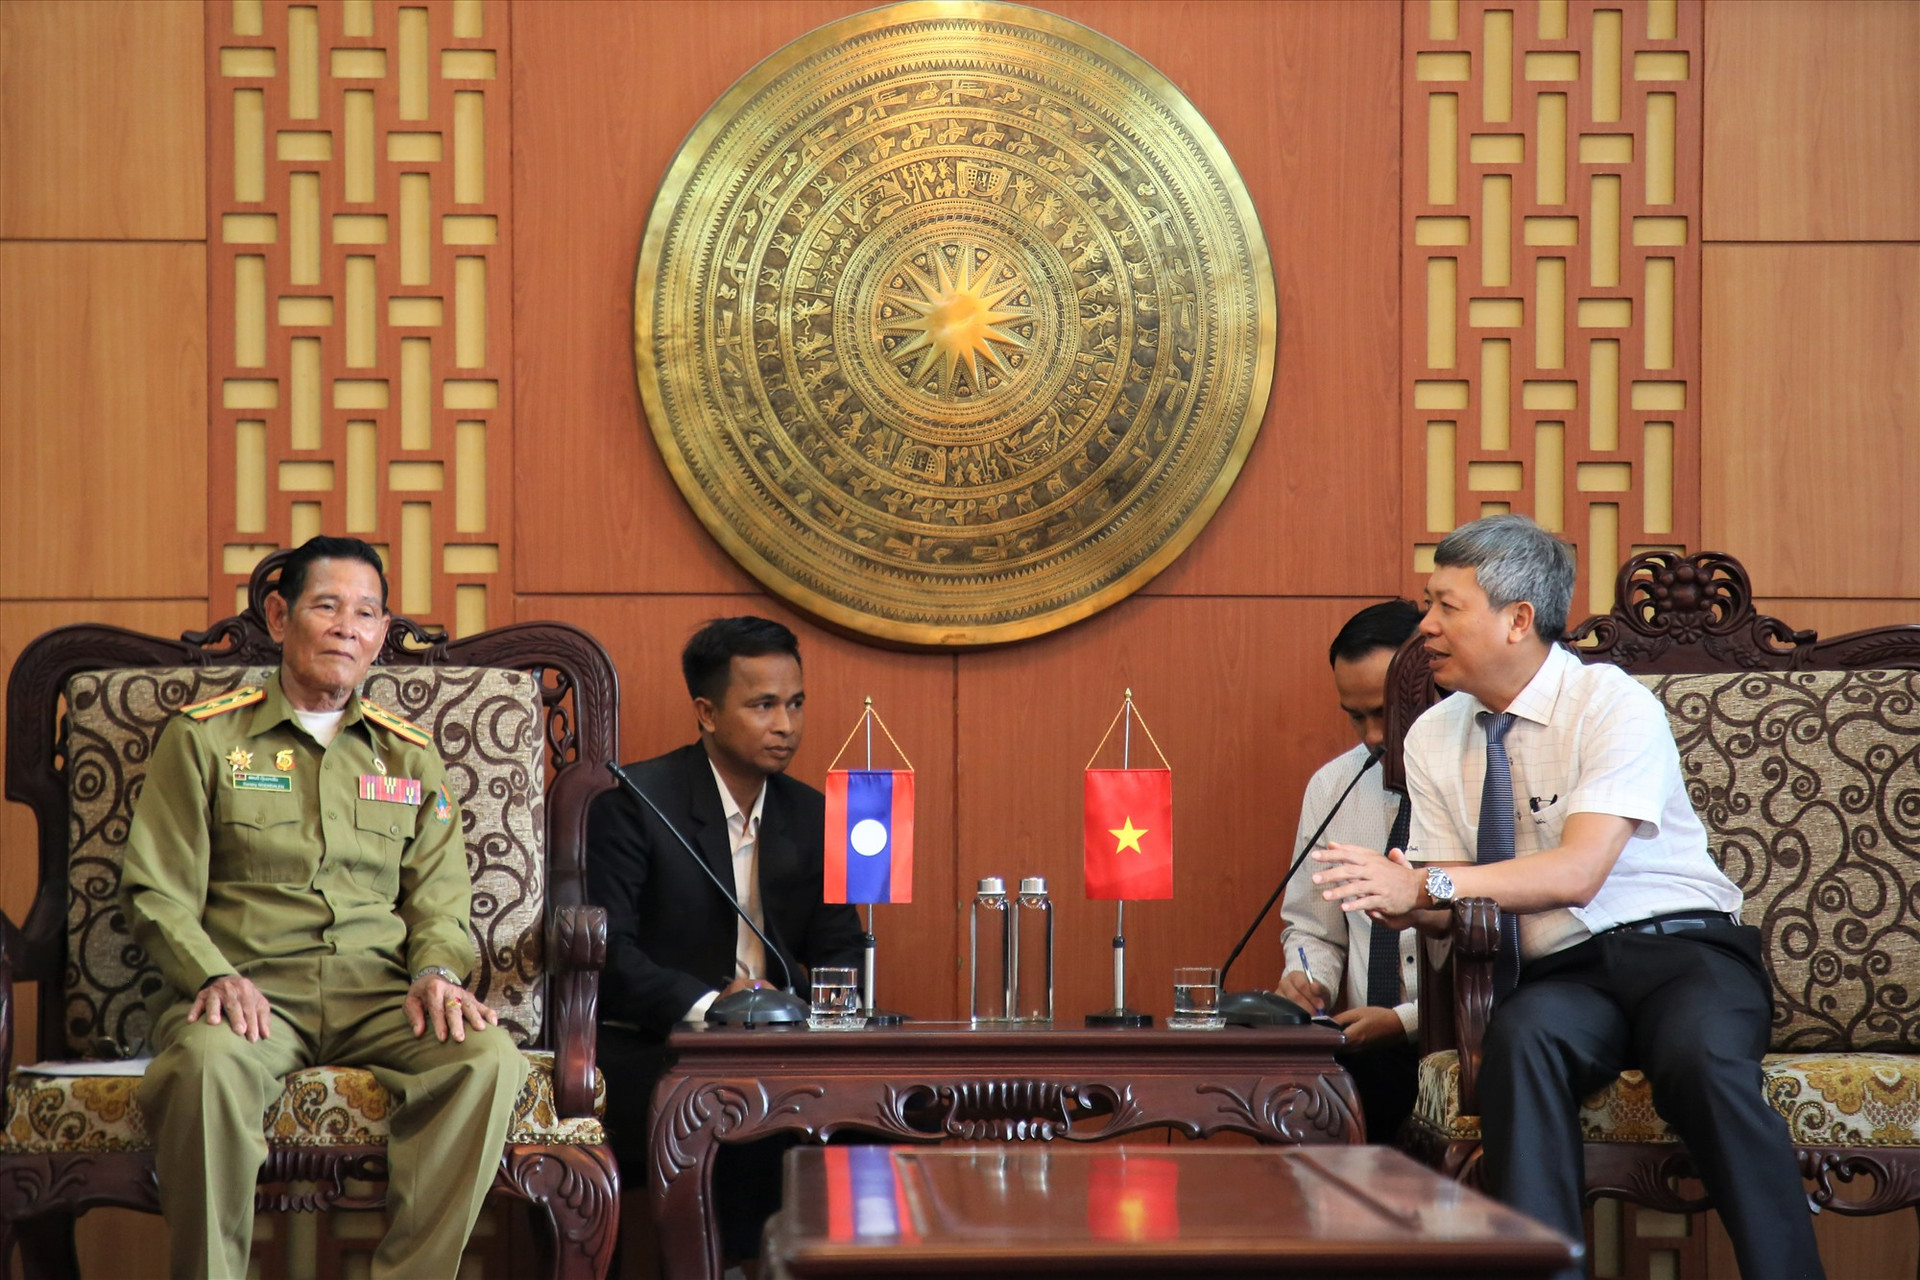 Phó Chủ tịch UBND tỉnh thông tin một số tình hình của Quảng Nam với đại diện Hiệp hội Cựu chiến binh tỉnh Sê Kông (Lào). Ảnh: Đ.N